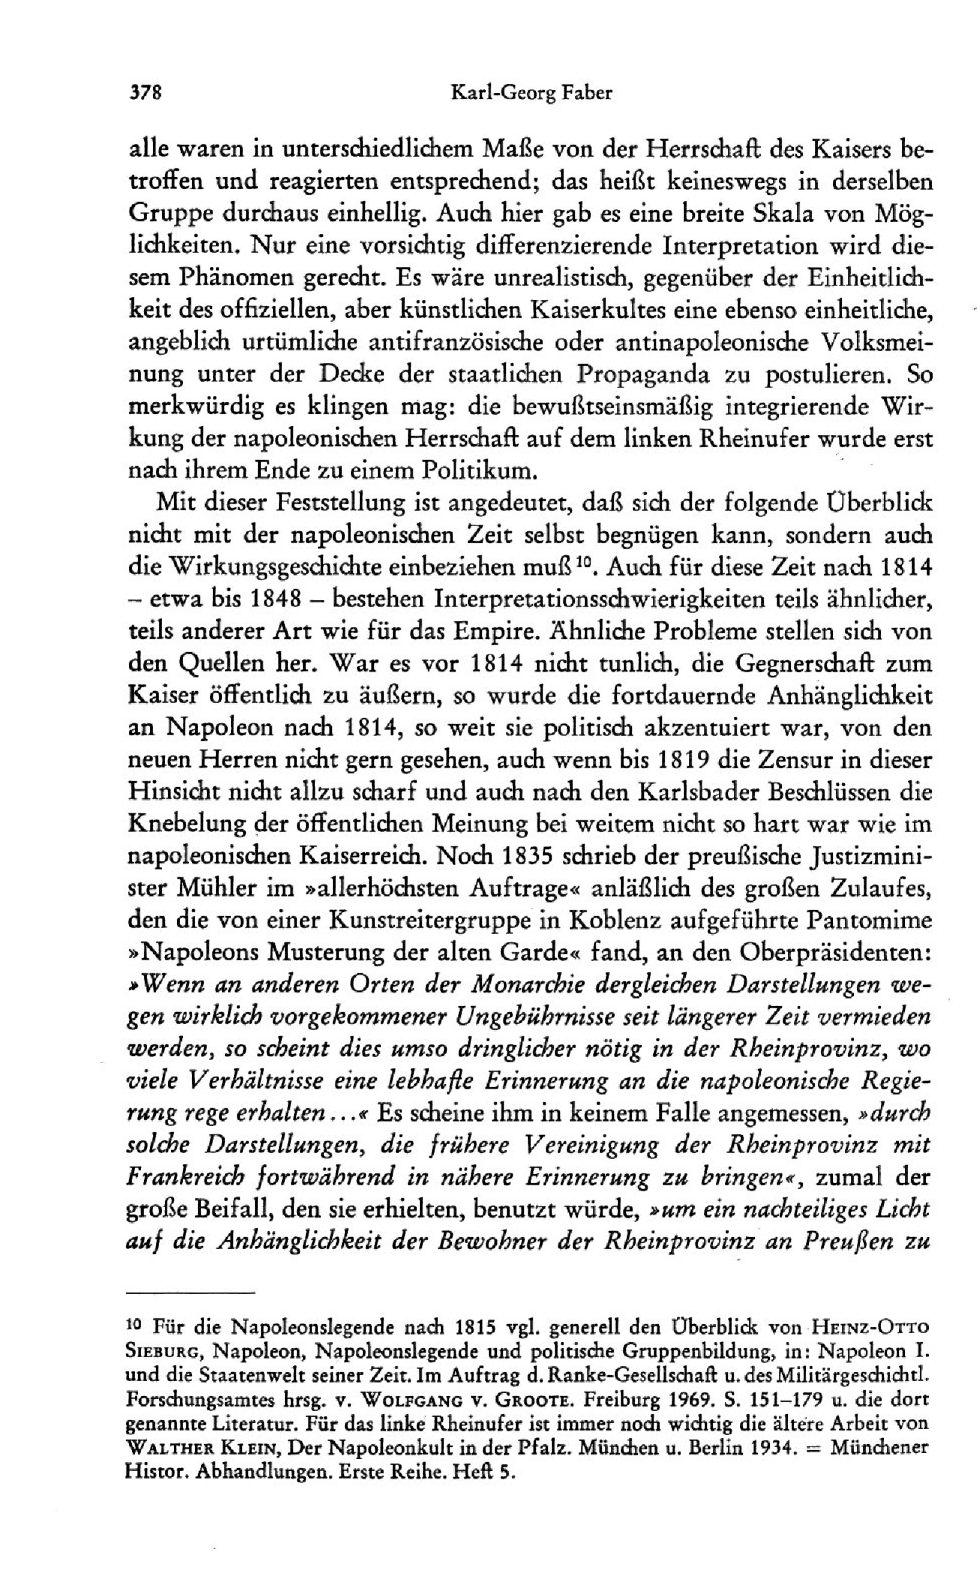 378 Karl-Georg Faber alle waren in untersdiiedlichem Maße von der Herrschaft des Kaisers betroffen und reagierten entsprechend; das heißt keineswegs in derselben Gruppe durchaus einhellig.